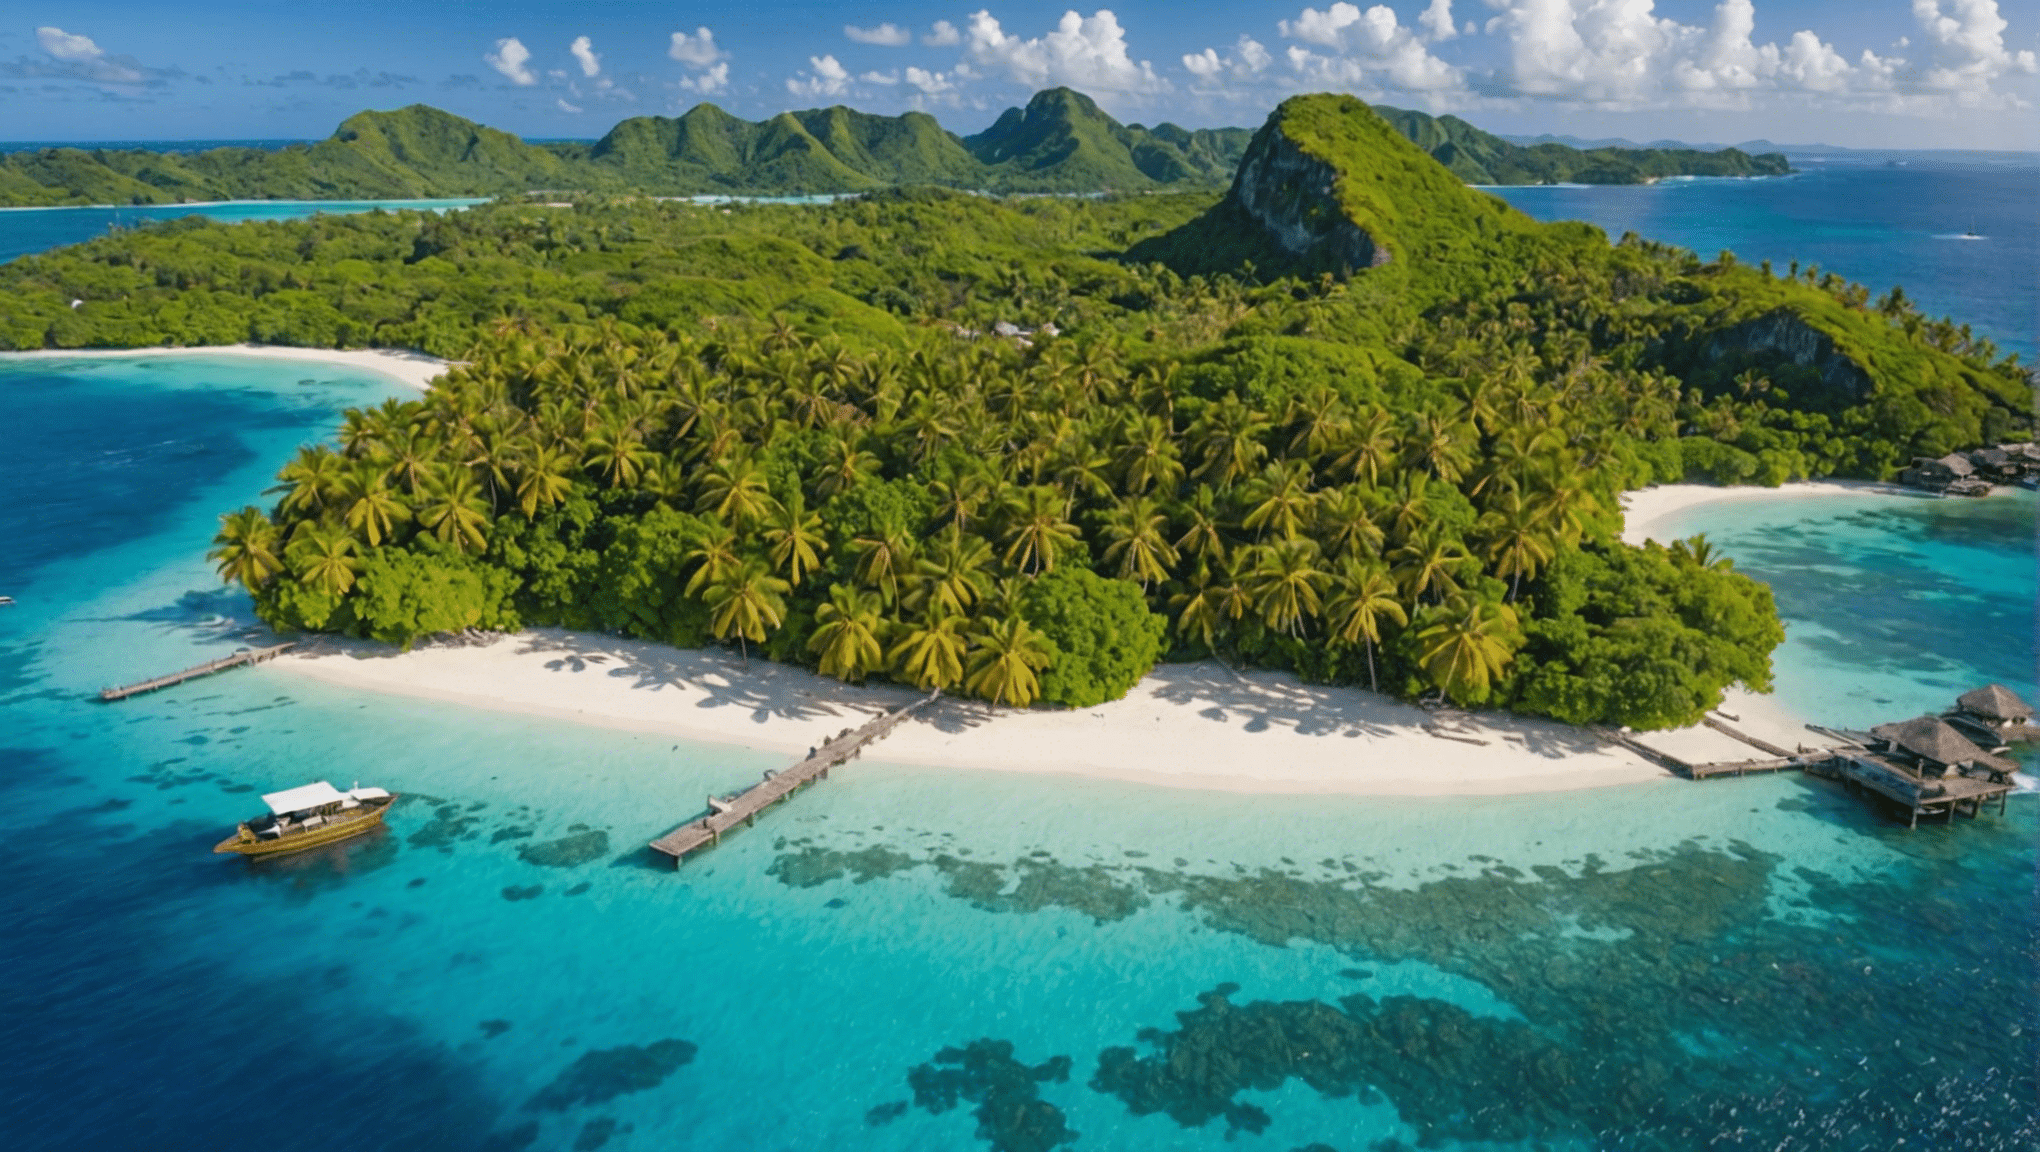 अपने जीवन में कम से कम एक बार यात्रा करने के लिए शीर्ष 10 स्वर्ग द्वीपों की खोज करें और इन स्वप्न स्थलों की सुंदरता से खुद को दूर ले जाएं।